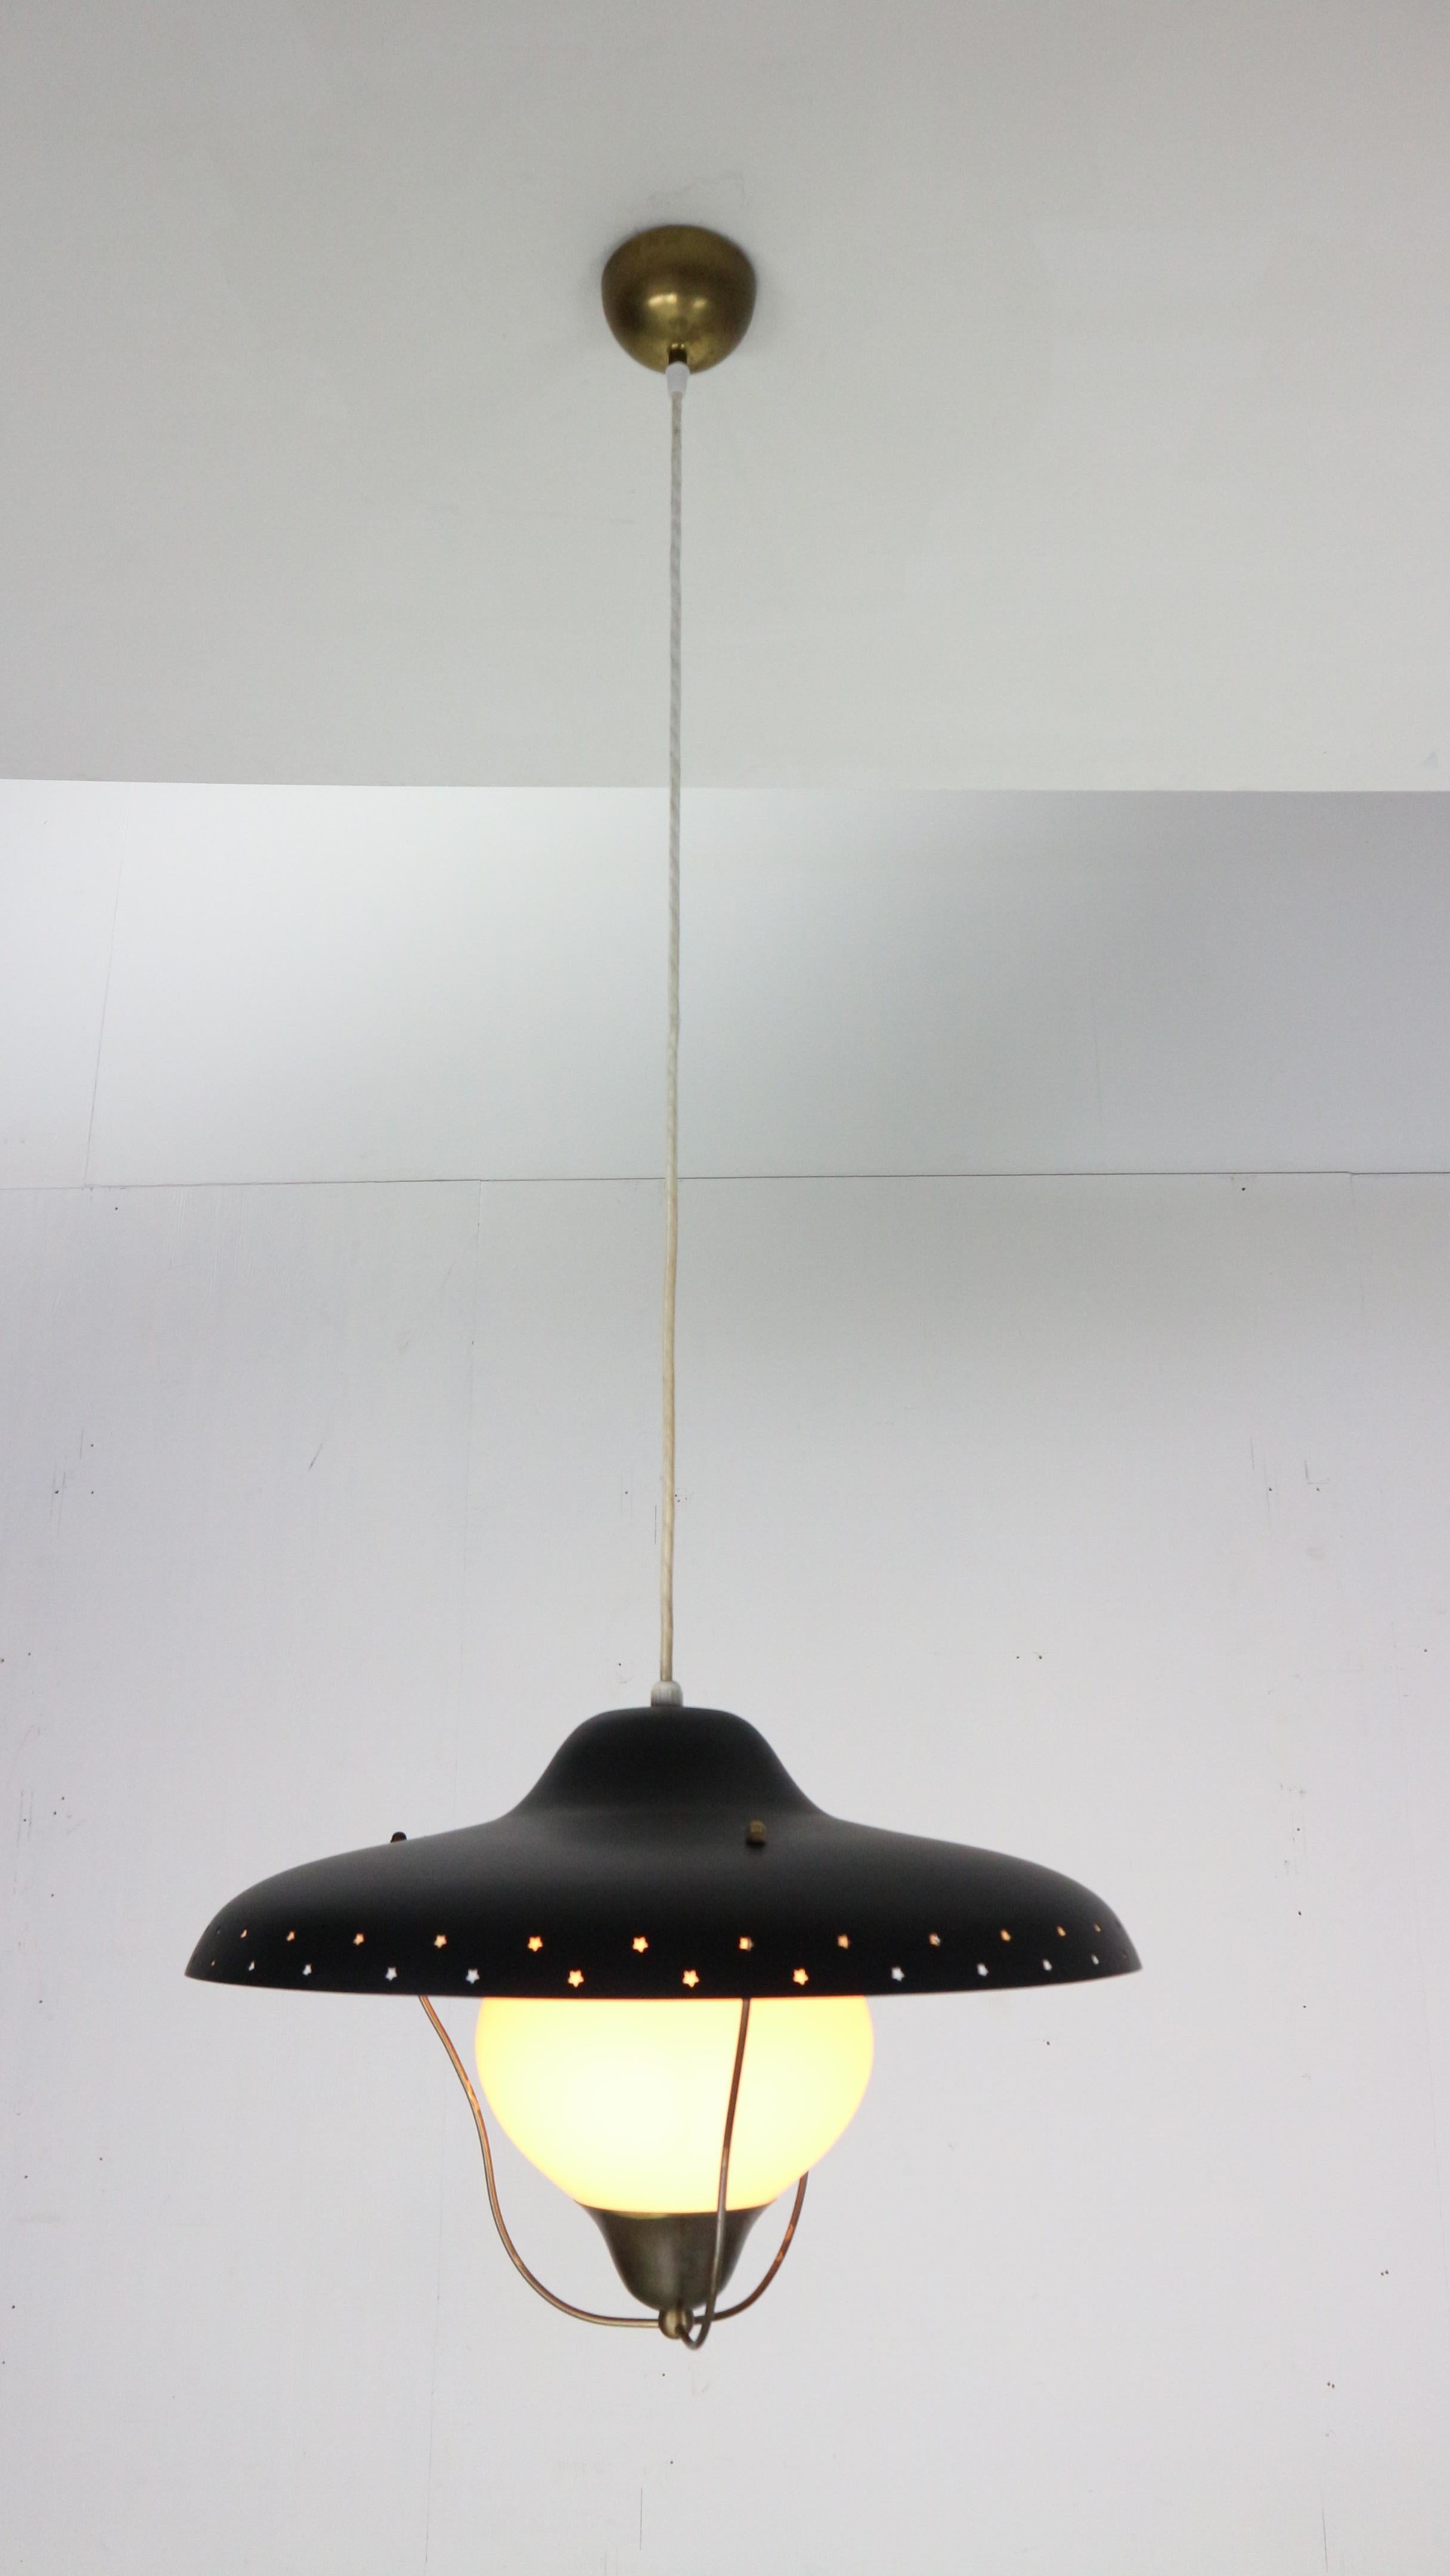 Pendelleuchte aus Messing, schwarz lackiert und Opalglas, entworfen von Bent Karlby und hergestellt von Lyfa, Dänemark, 1950er Jahre. Der Schirm zeigt durchbrochene Sterne und das Glas wird von einem Messingfuß gehalten.
Die Lampe ist 25x45cm und in